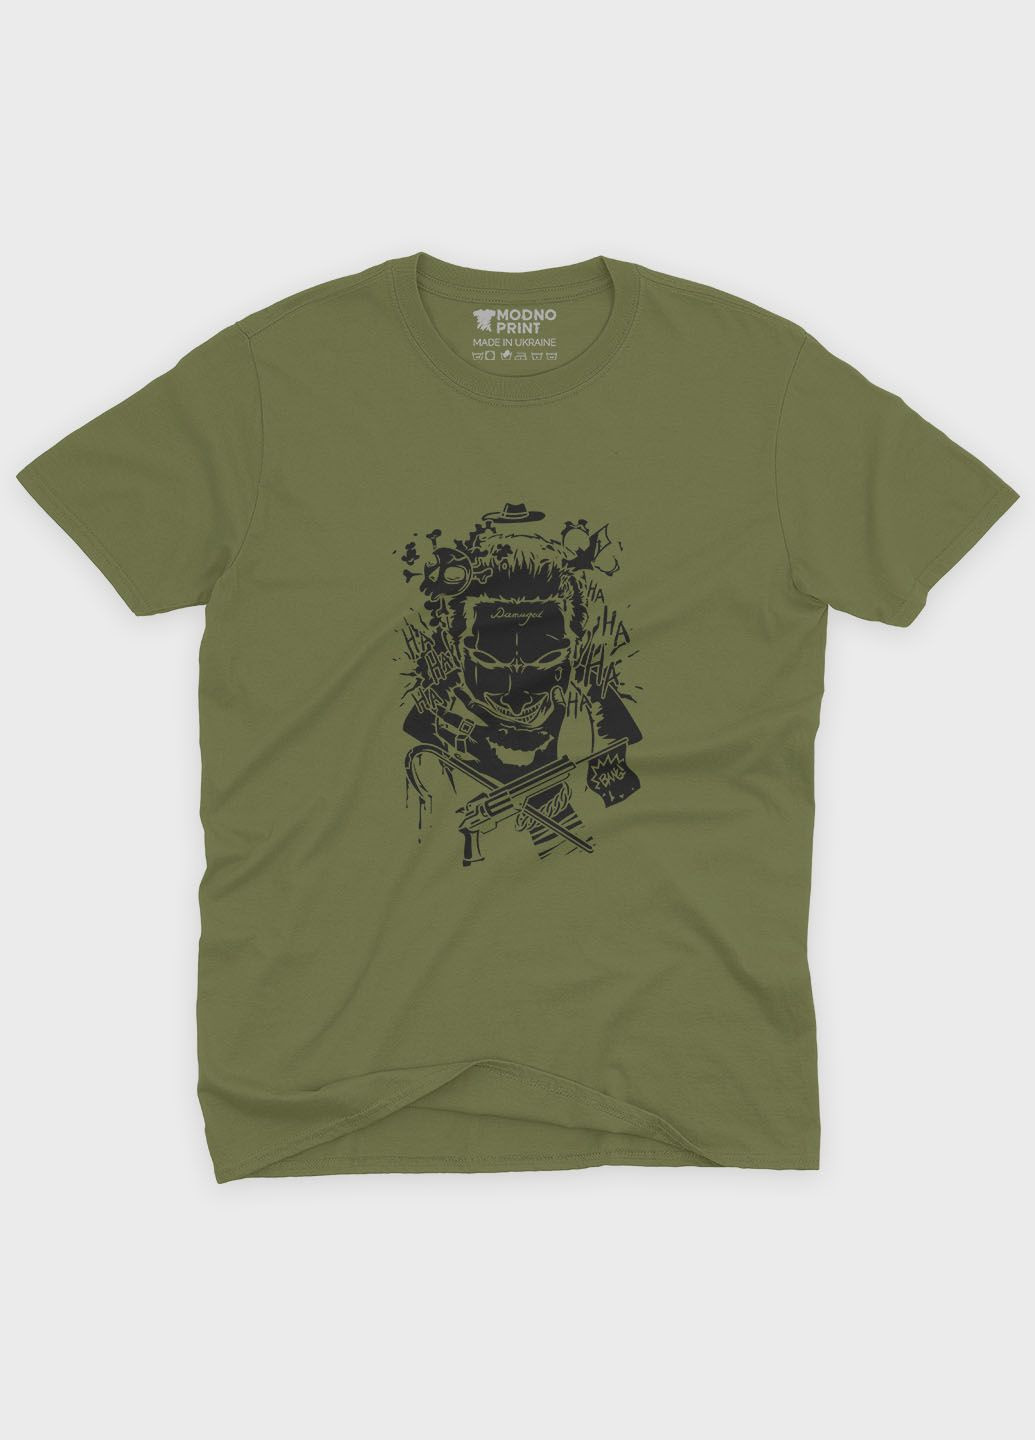 Хаки (оливковая) мужская футболка с принтом супервора - джокер (ts001-1-hgr-006-005-016) Modno